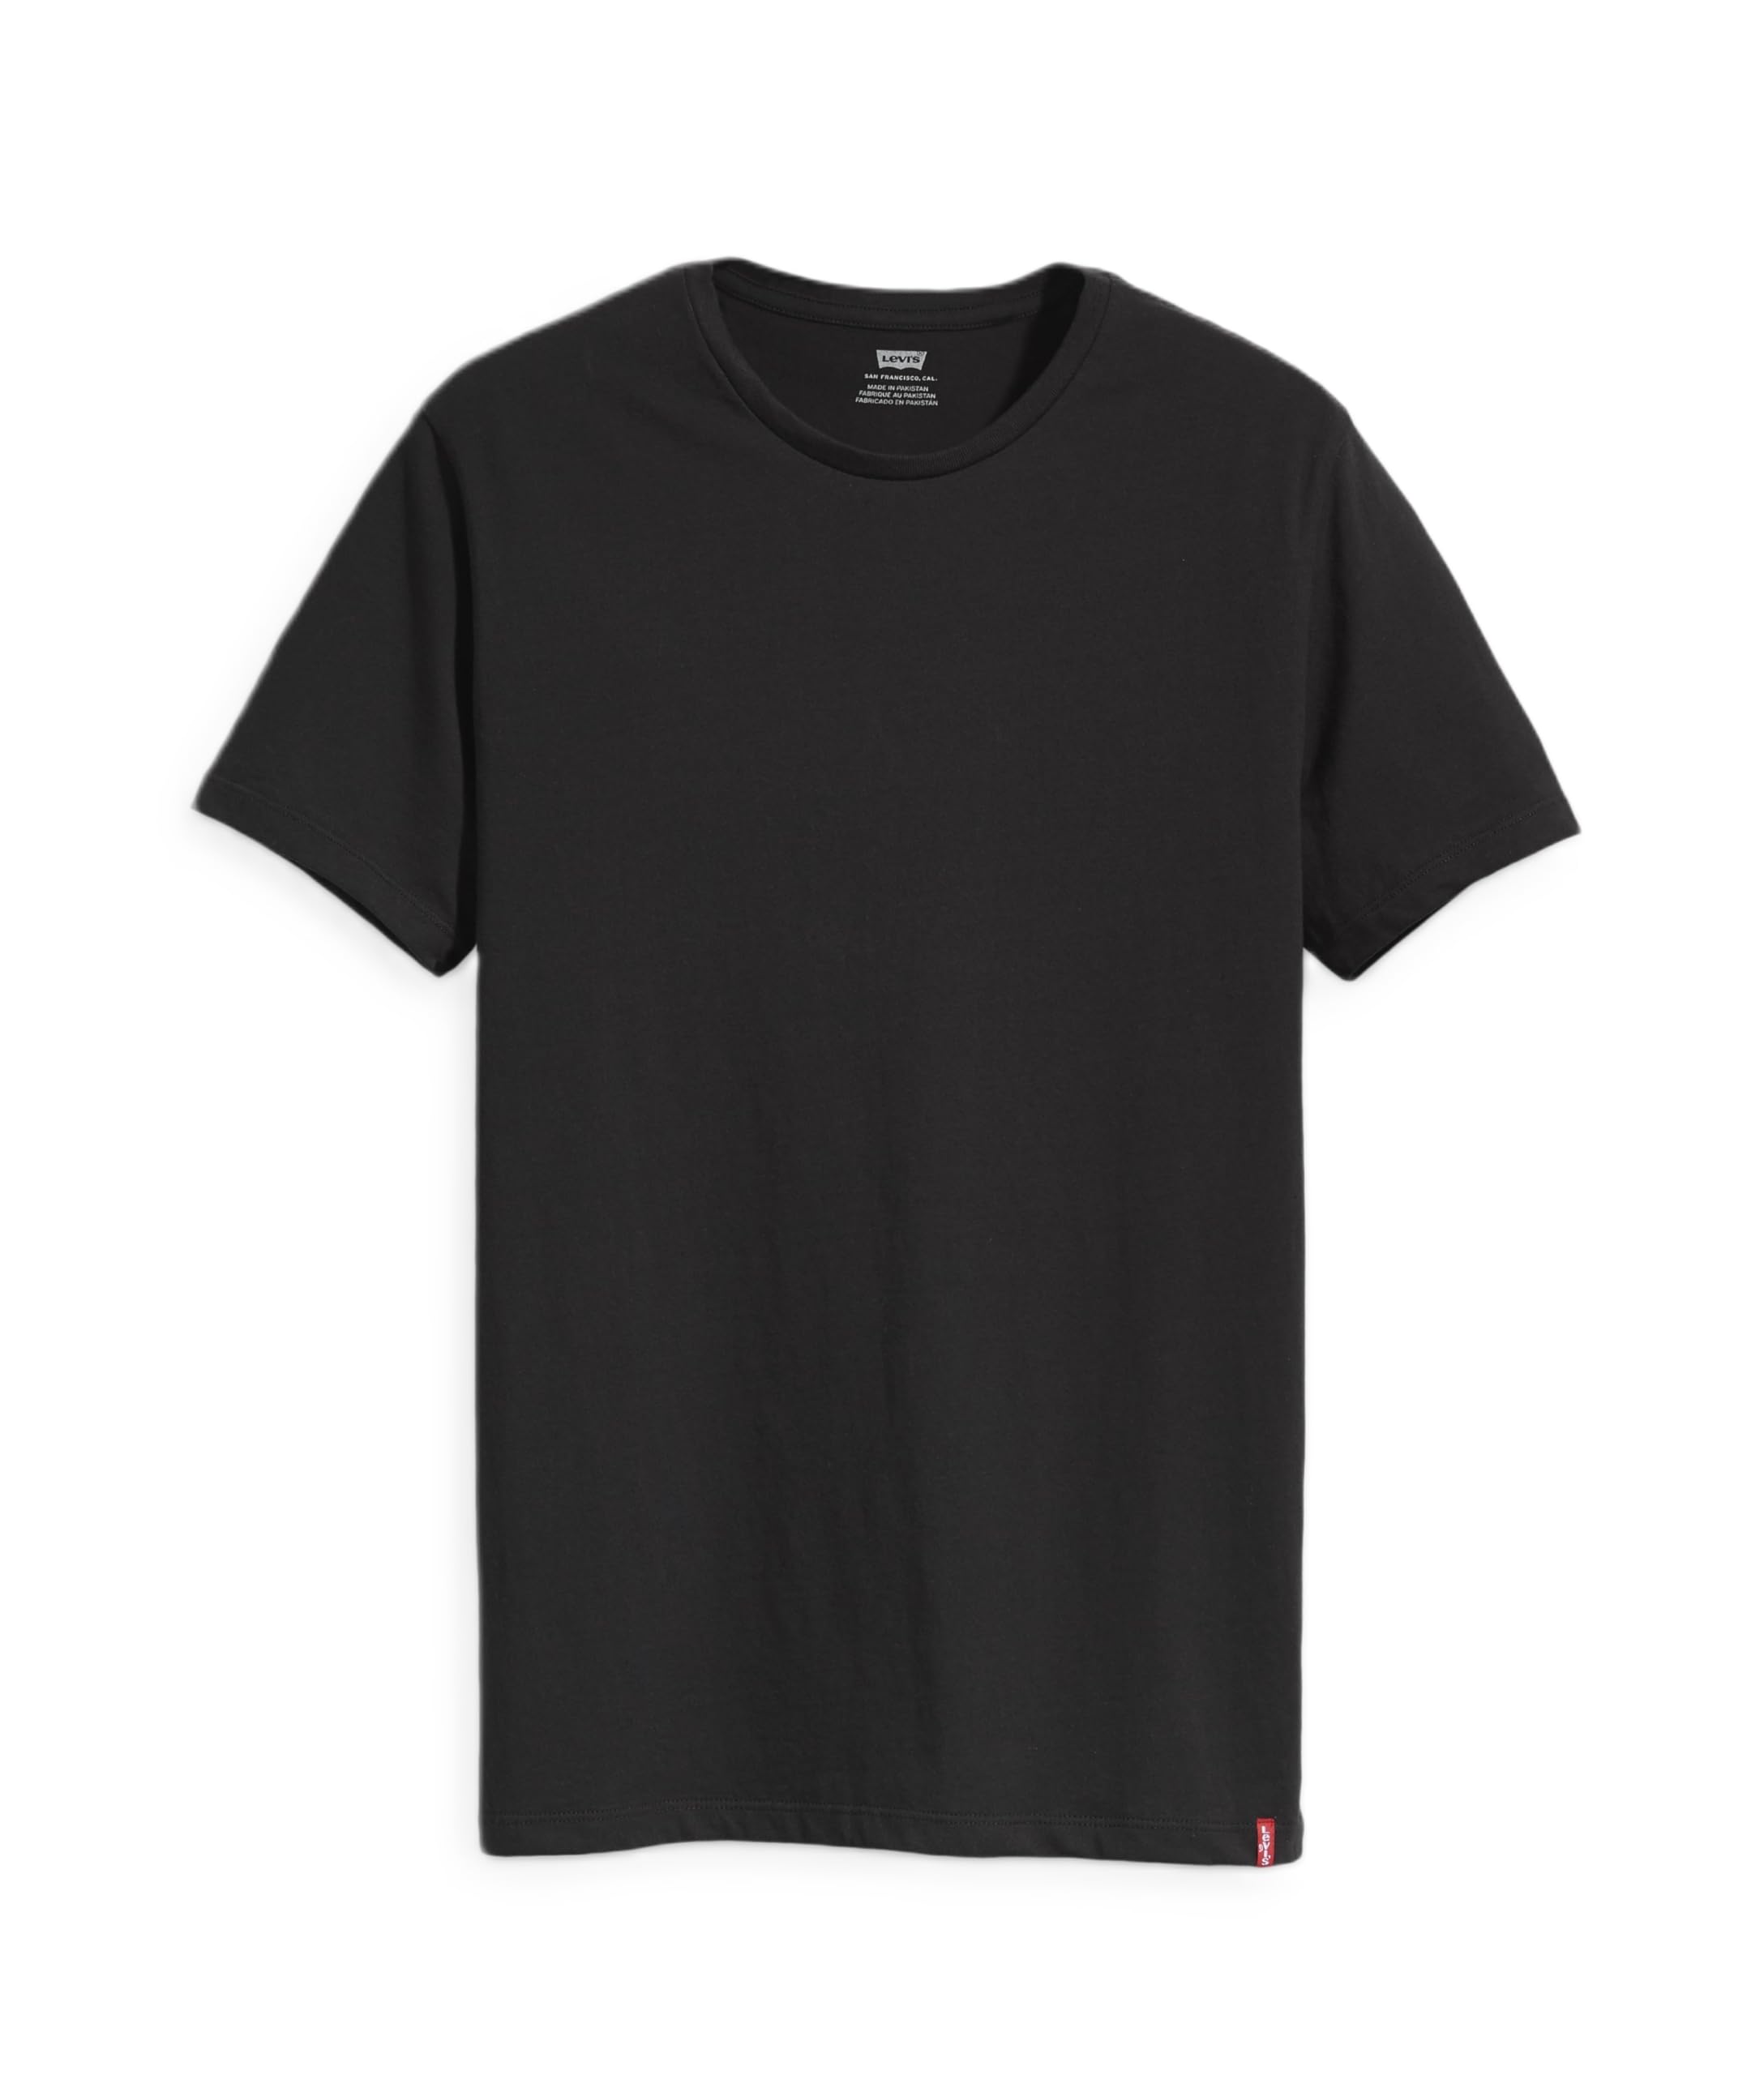 [リーバイス] Tシャツ 2パックTシャツ 半袖 2枚組 メンズ 79541-0001 TWO-PACK TEE BLACK + BLACK S